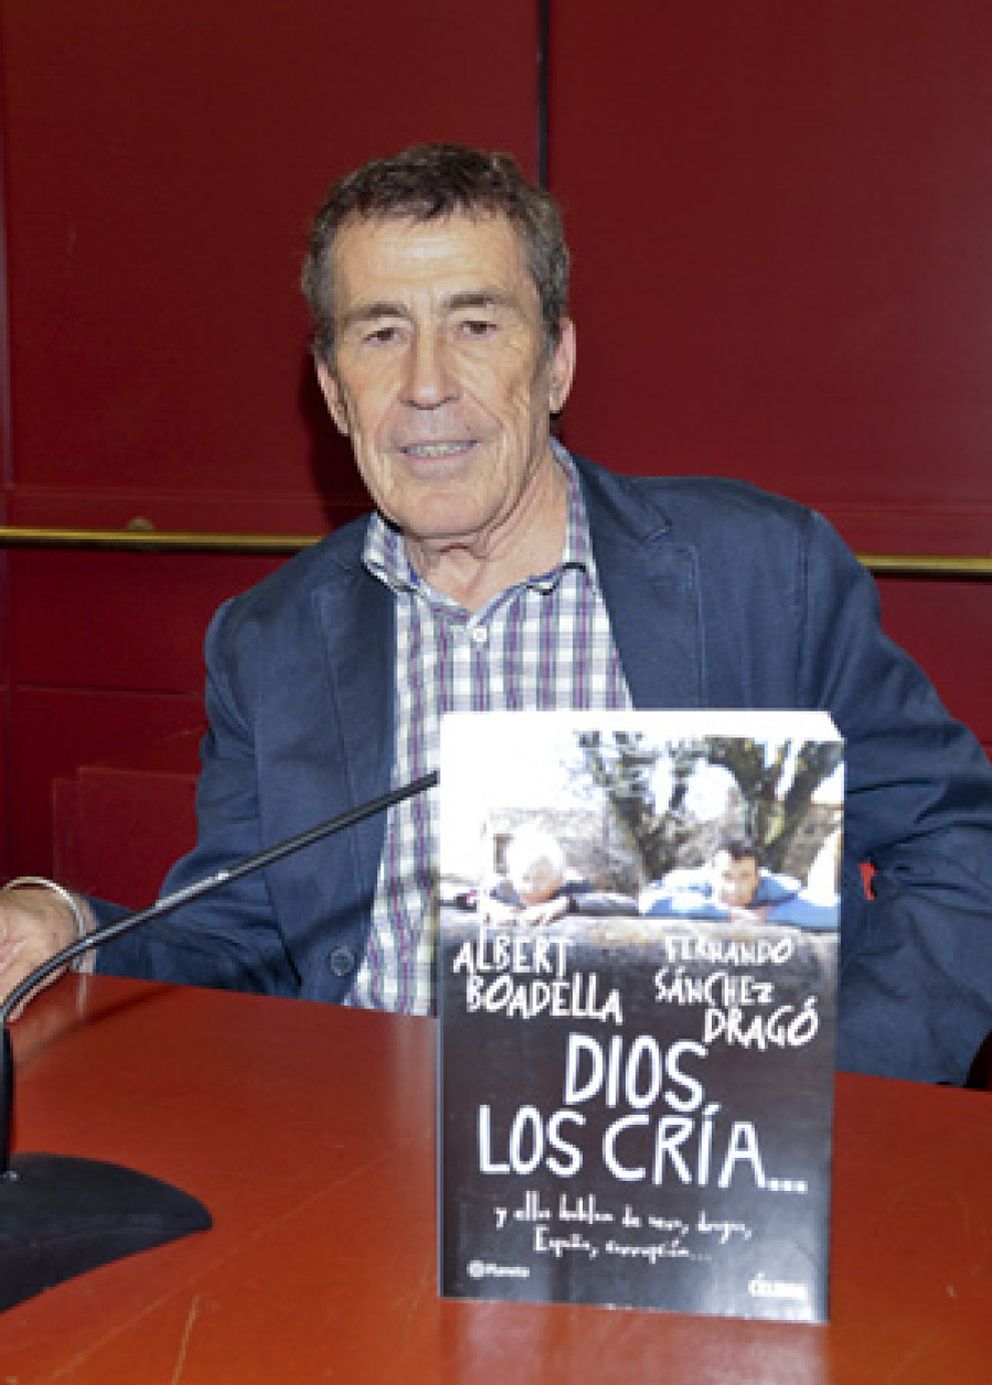 Foto: Viajes Barceló despide a Sánchez Dragó y algunas librerías retiran su obra